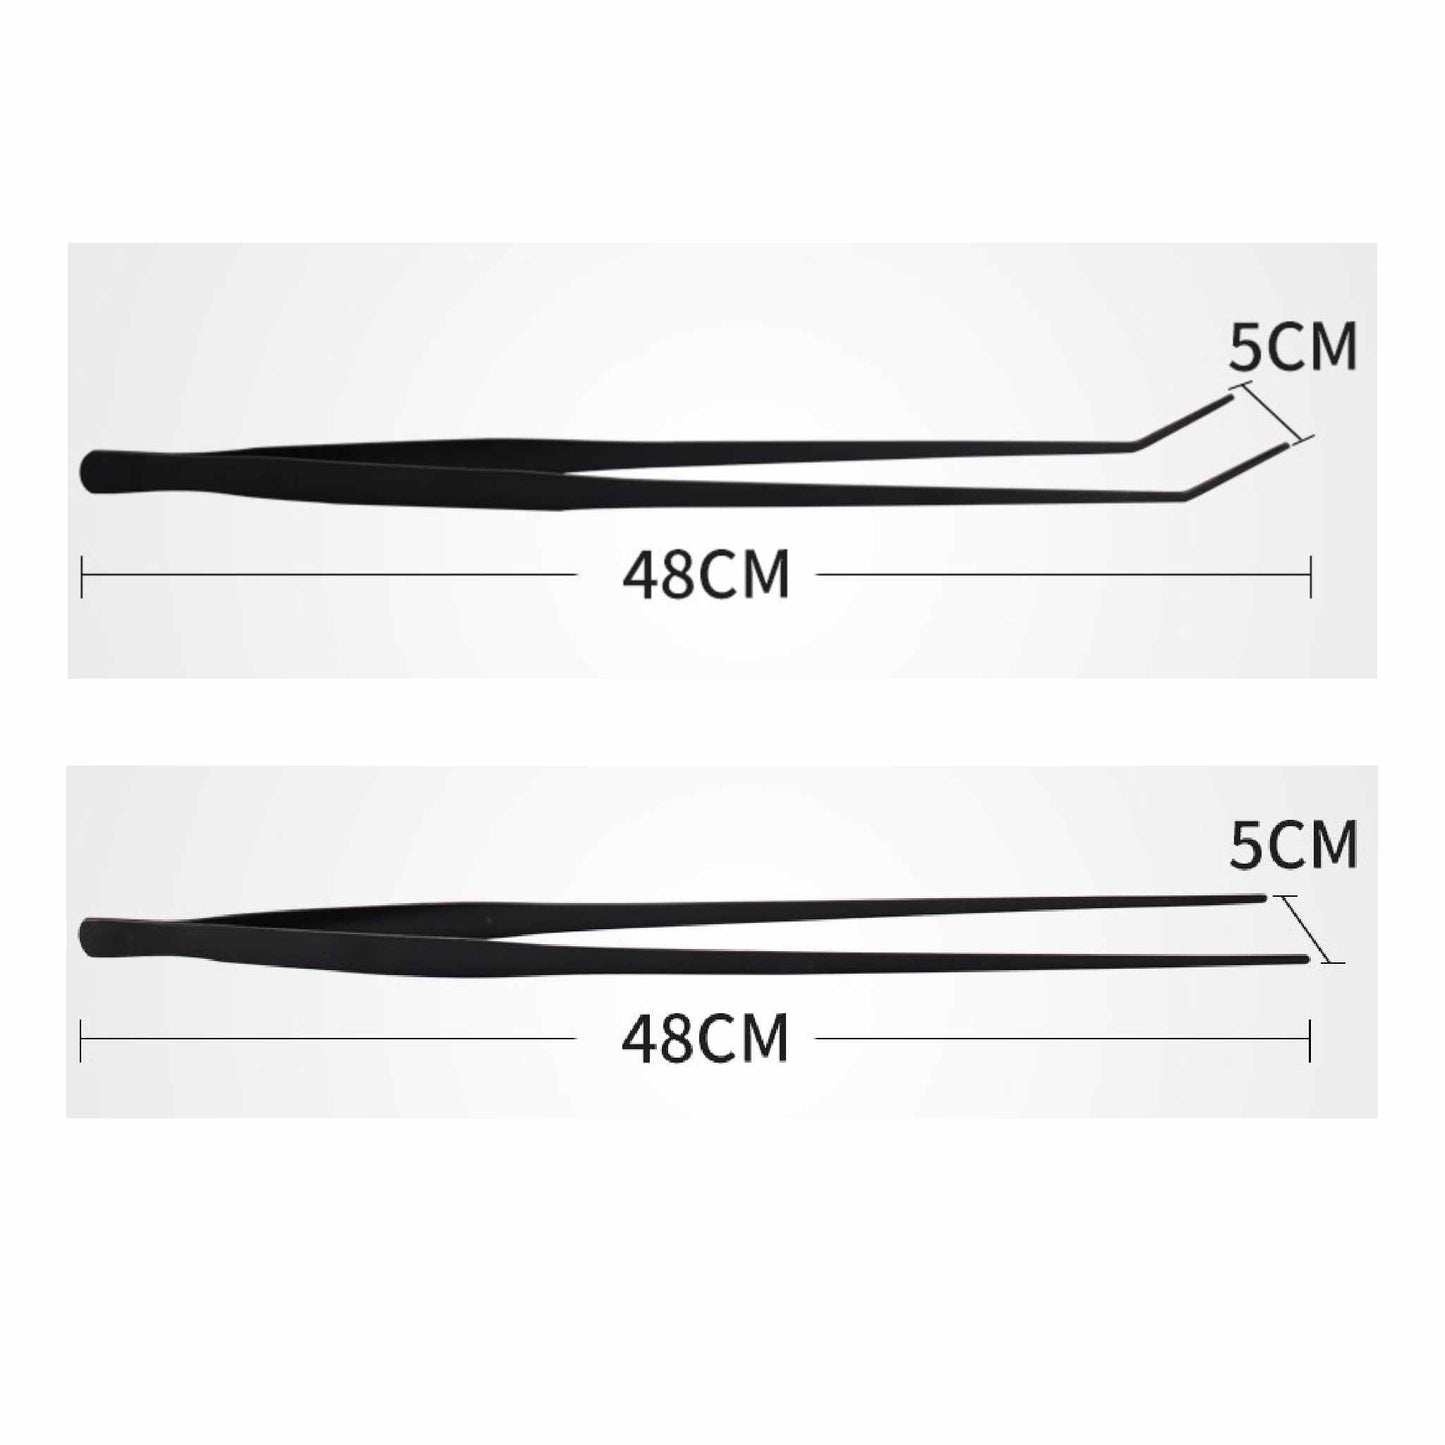 Stainless Steel Tweezers - Straight / Bent Tip - Vastocean